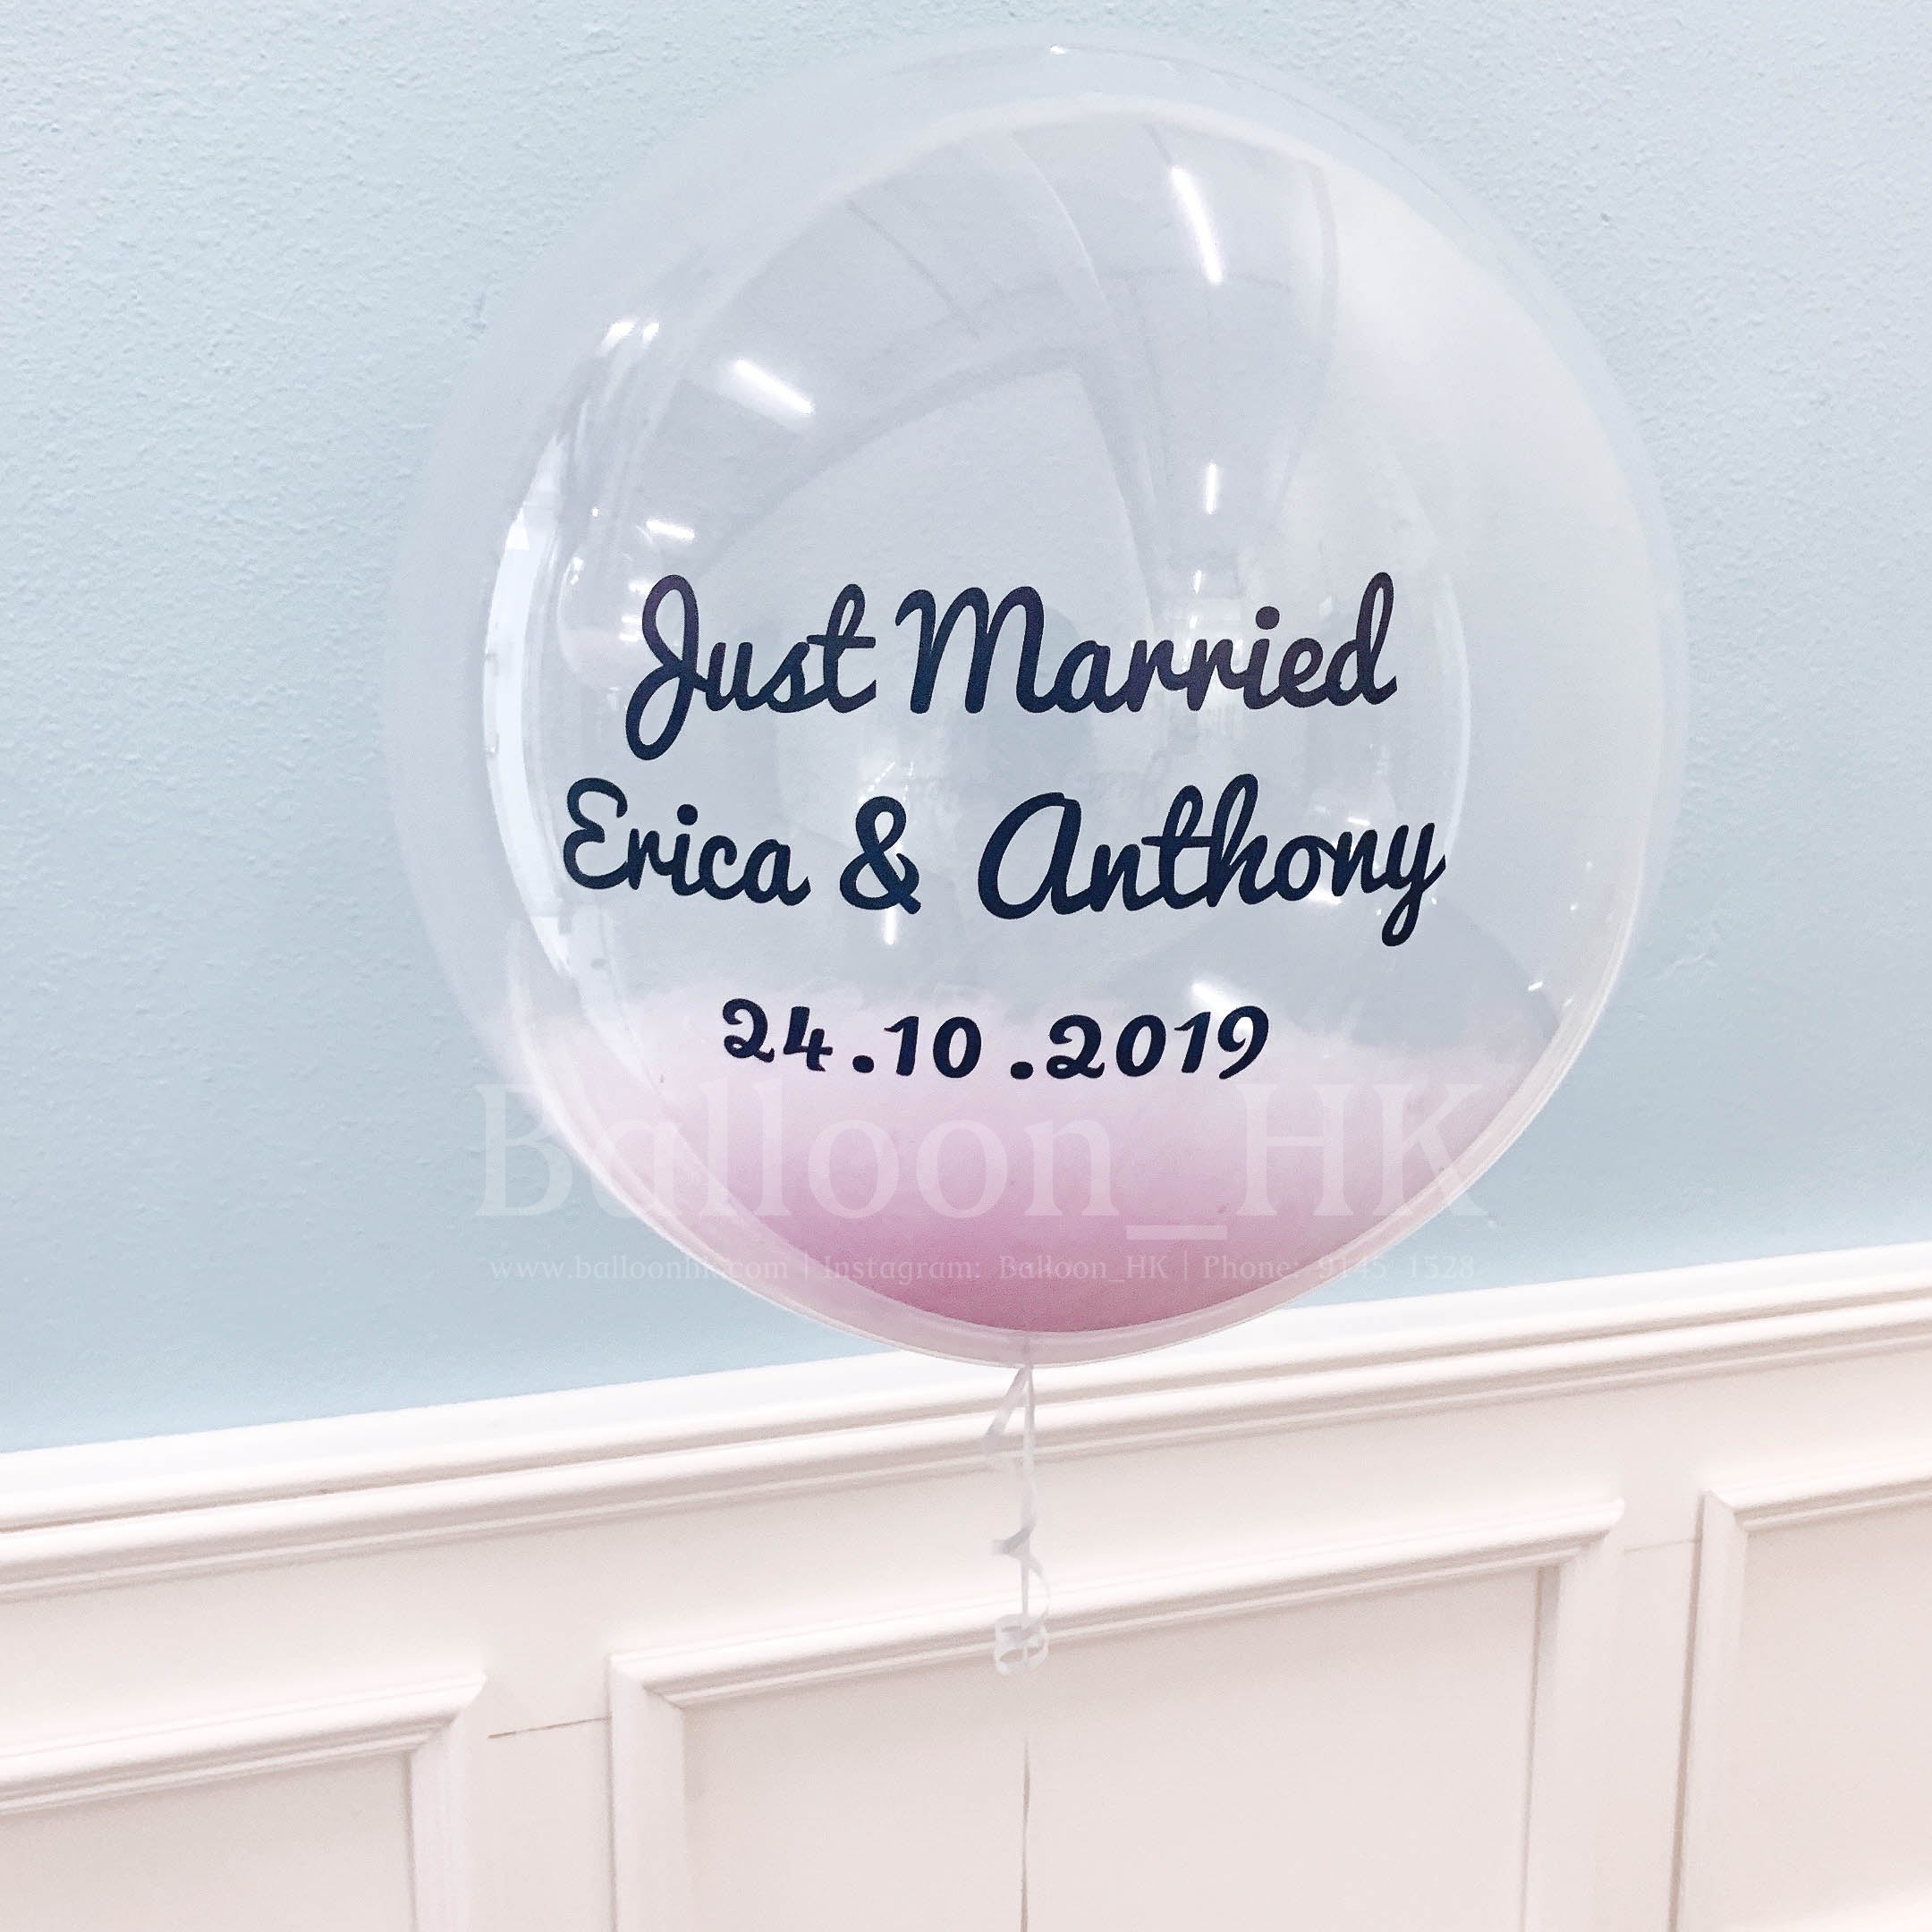 水晶羽毛氣球 - 婚禮主題